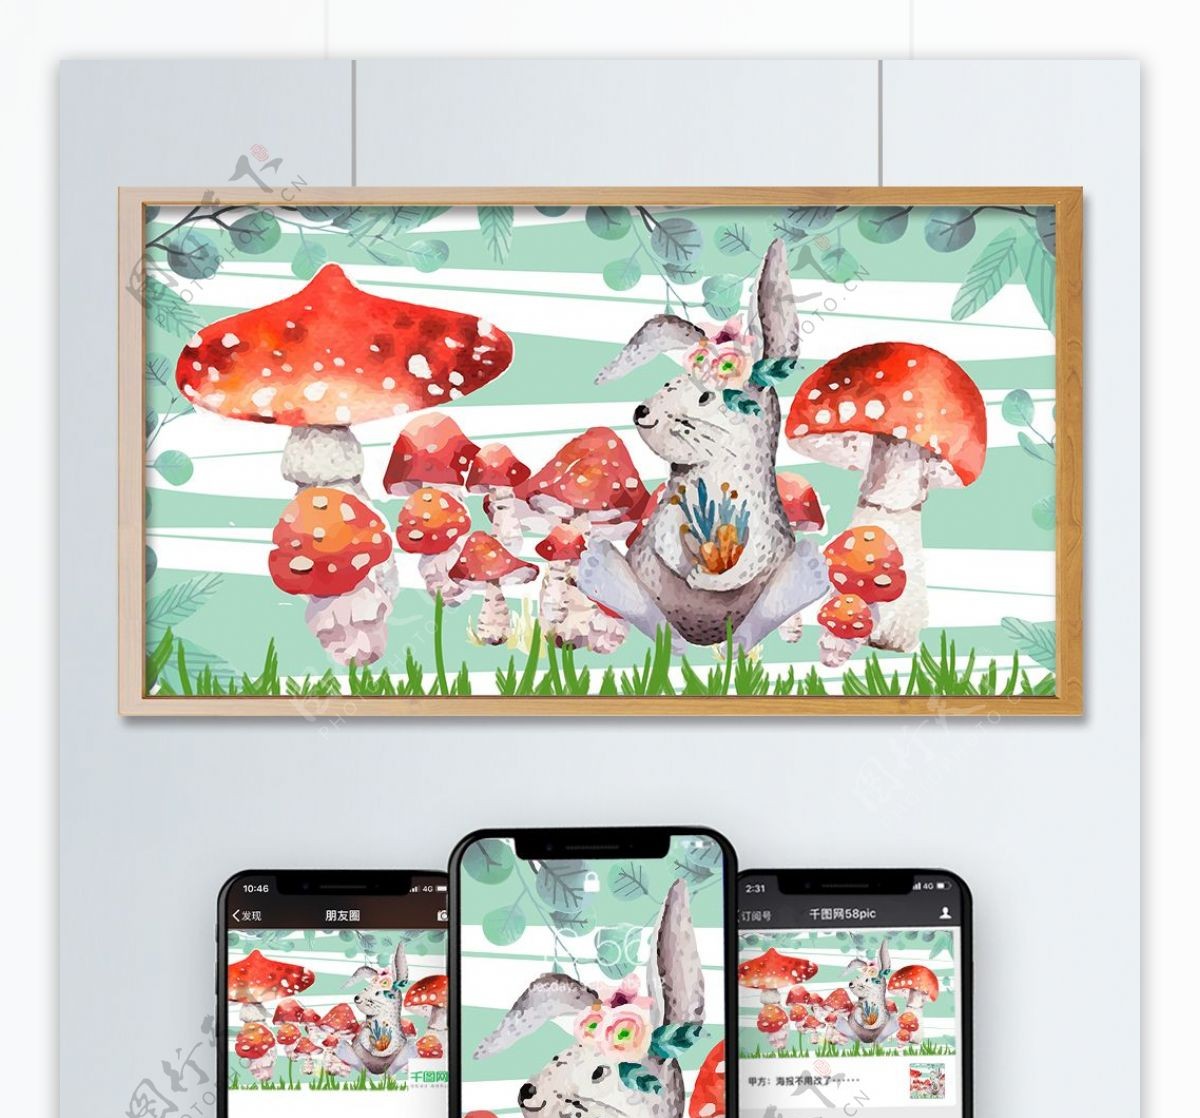 原创蘑菇儿童画本插画森林可爱的小动物兔子